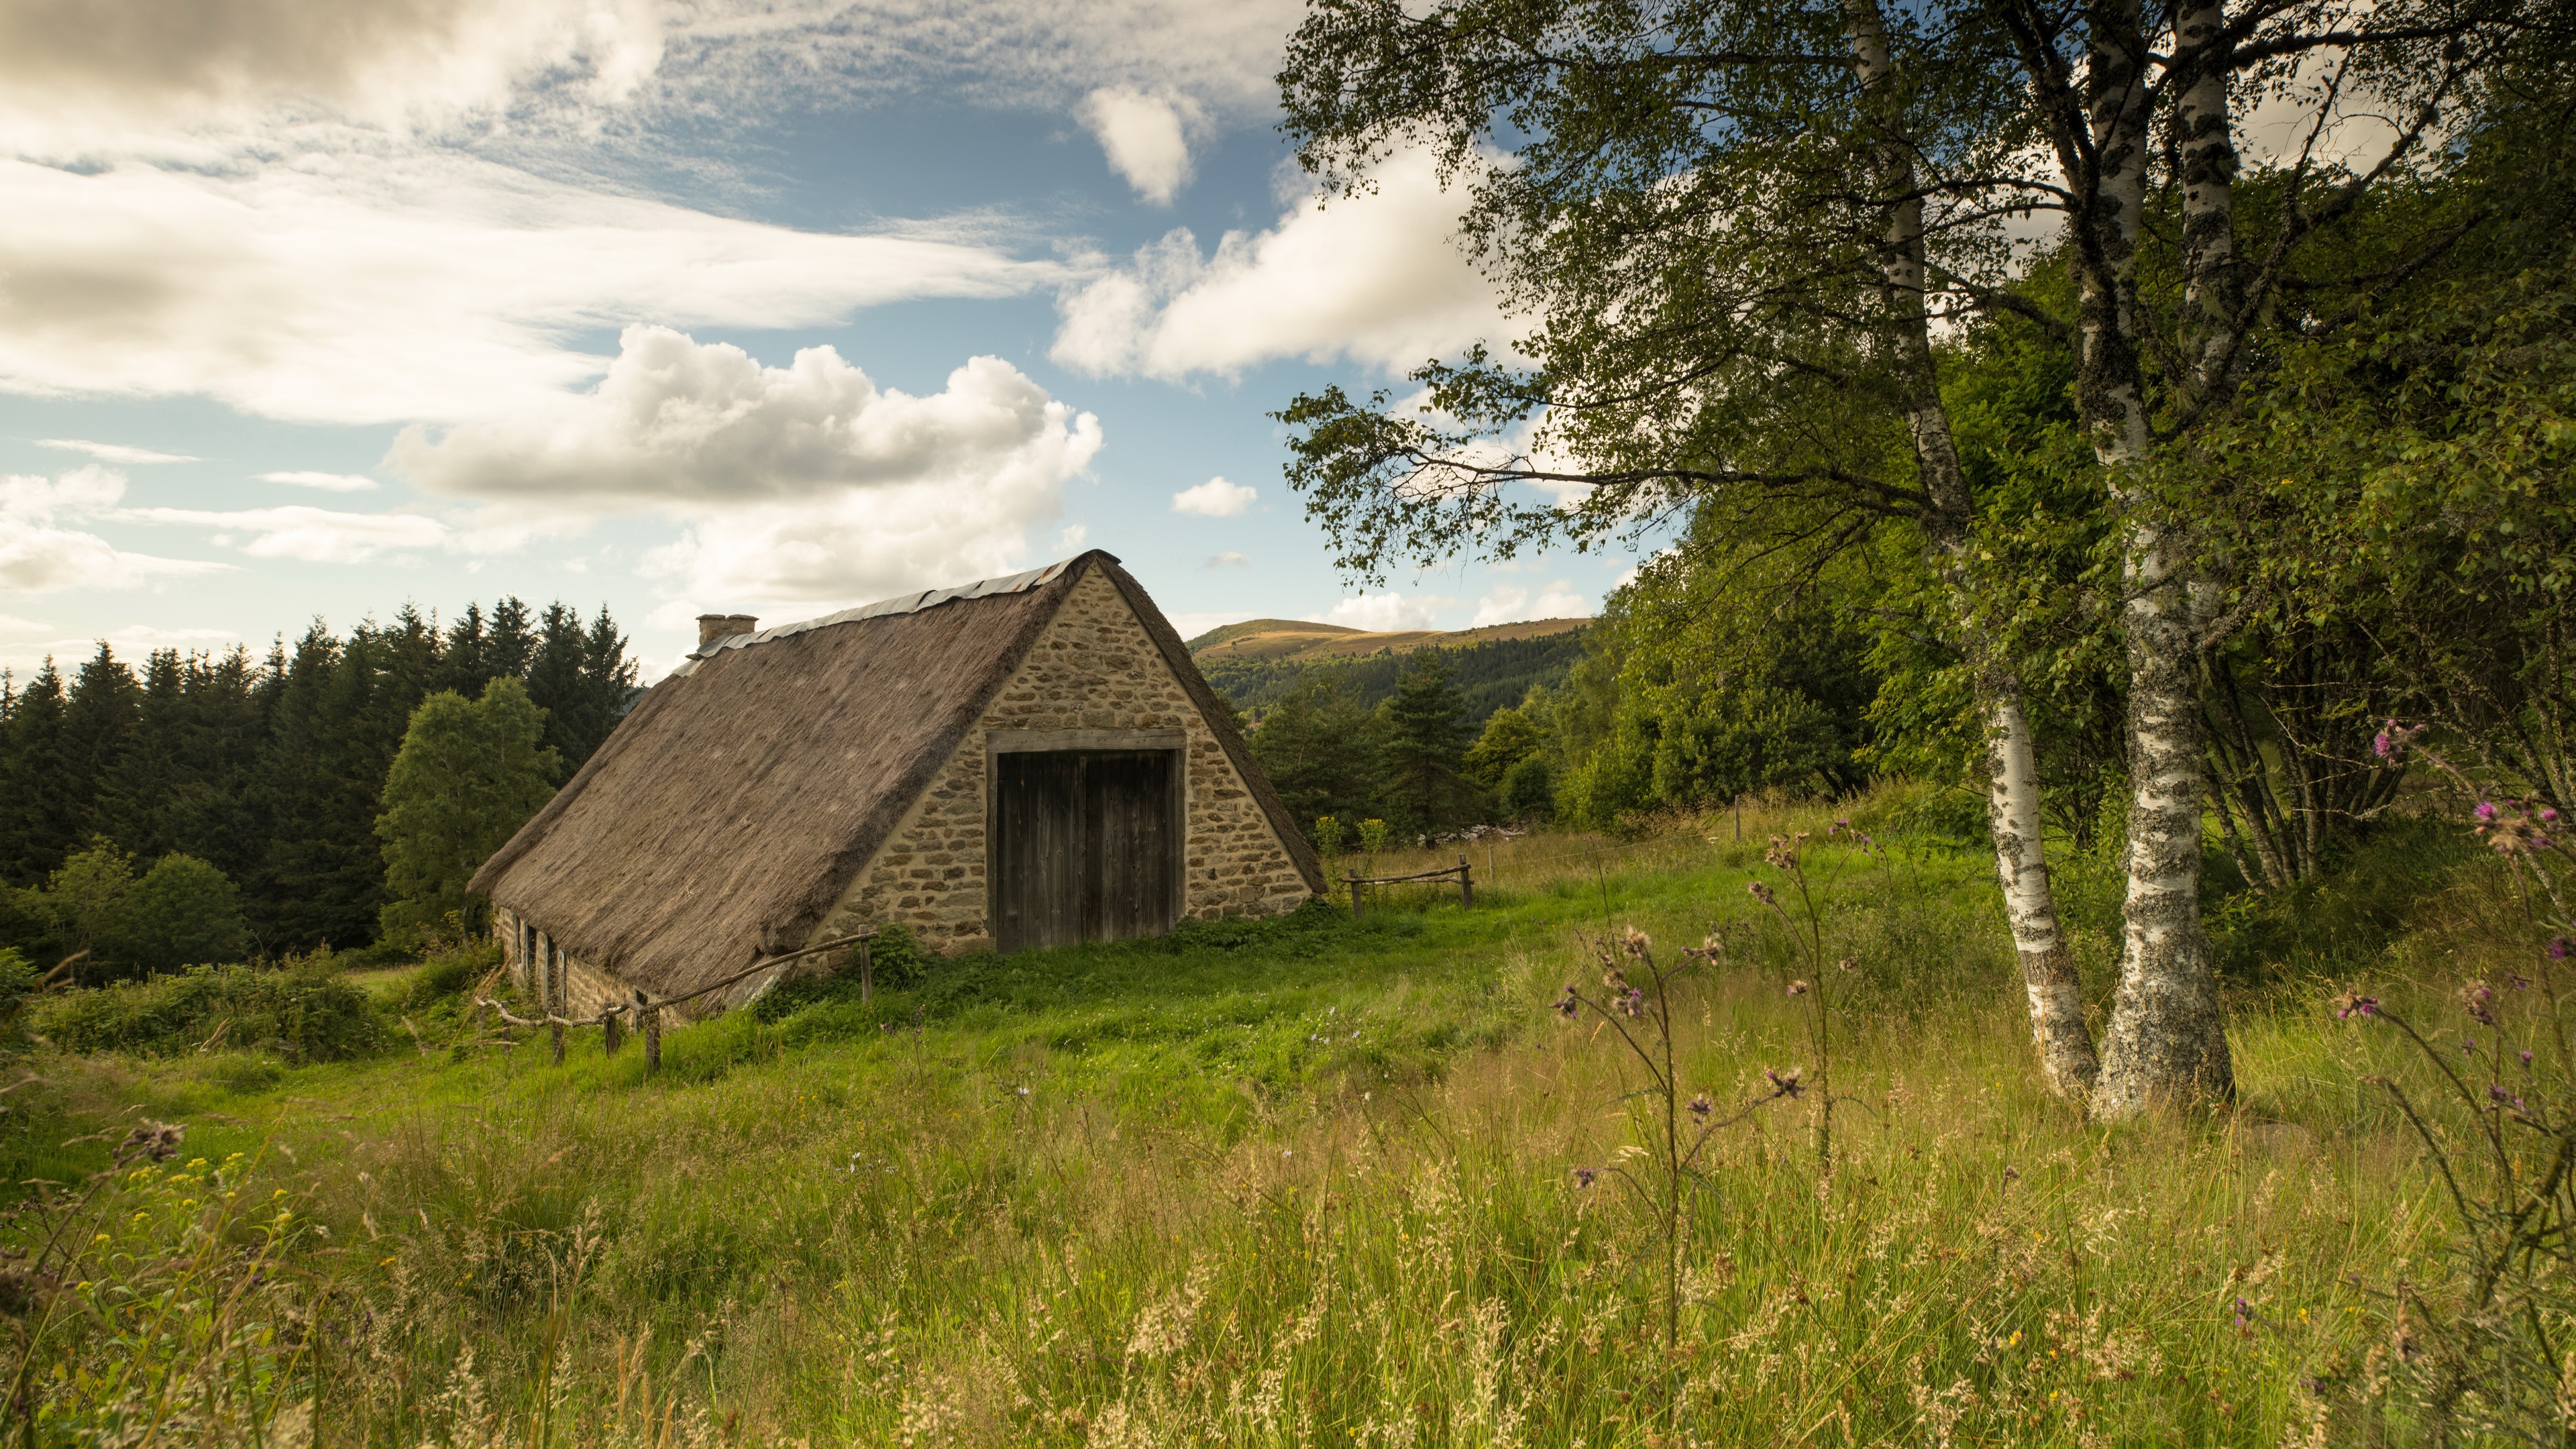 Download mobile wallpaper Landscape, Forest, Hut, Man Made for free.